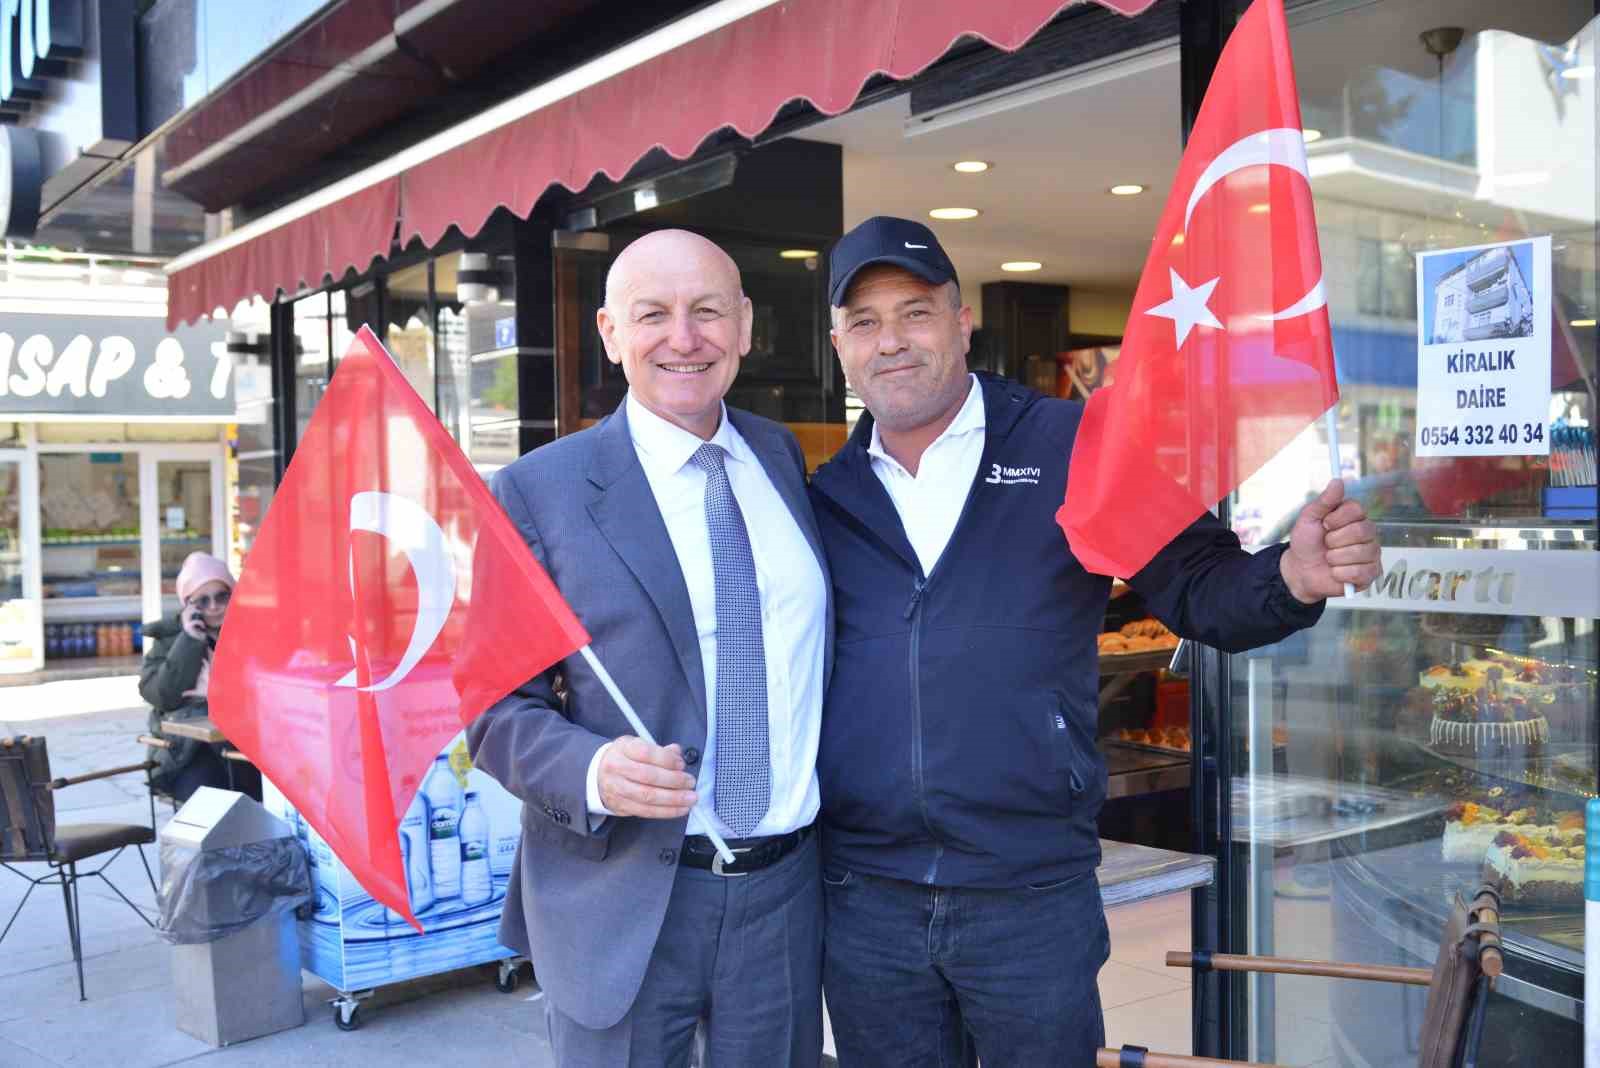 Terme’de binlerce Türk bayrağı dağıtıldı